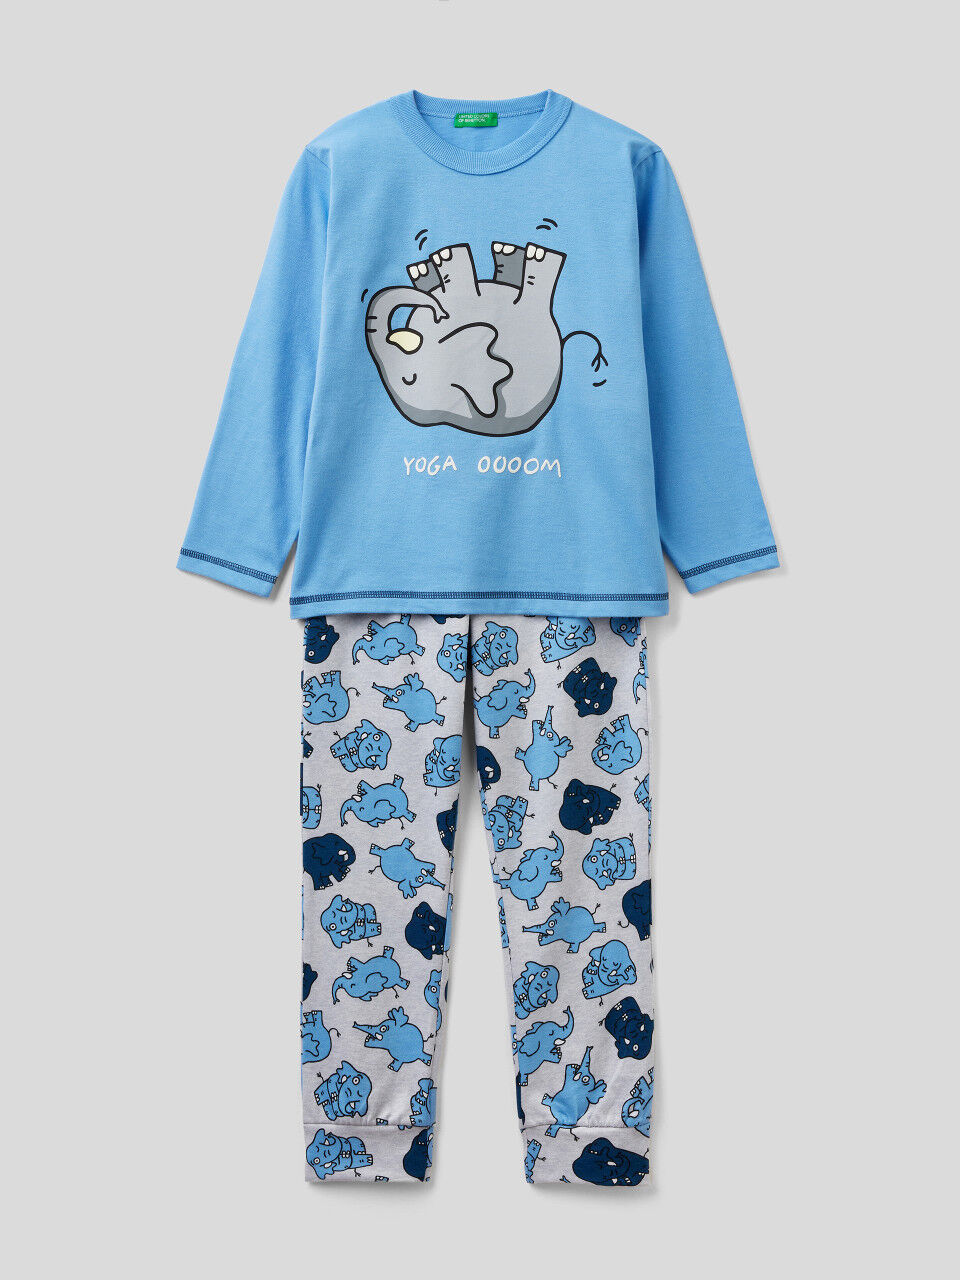 Pijama comprido 100% algodão com estampa